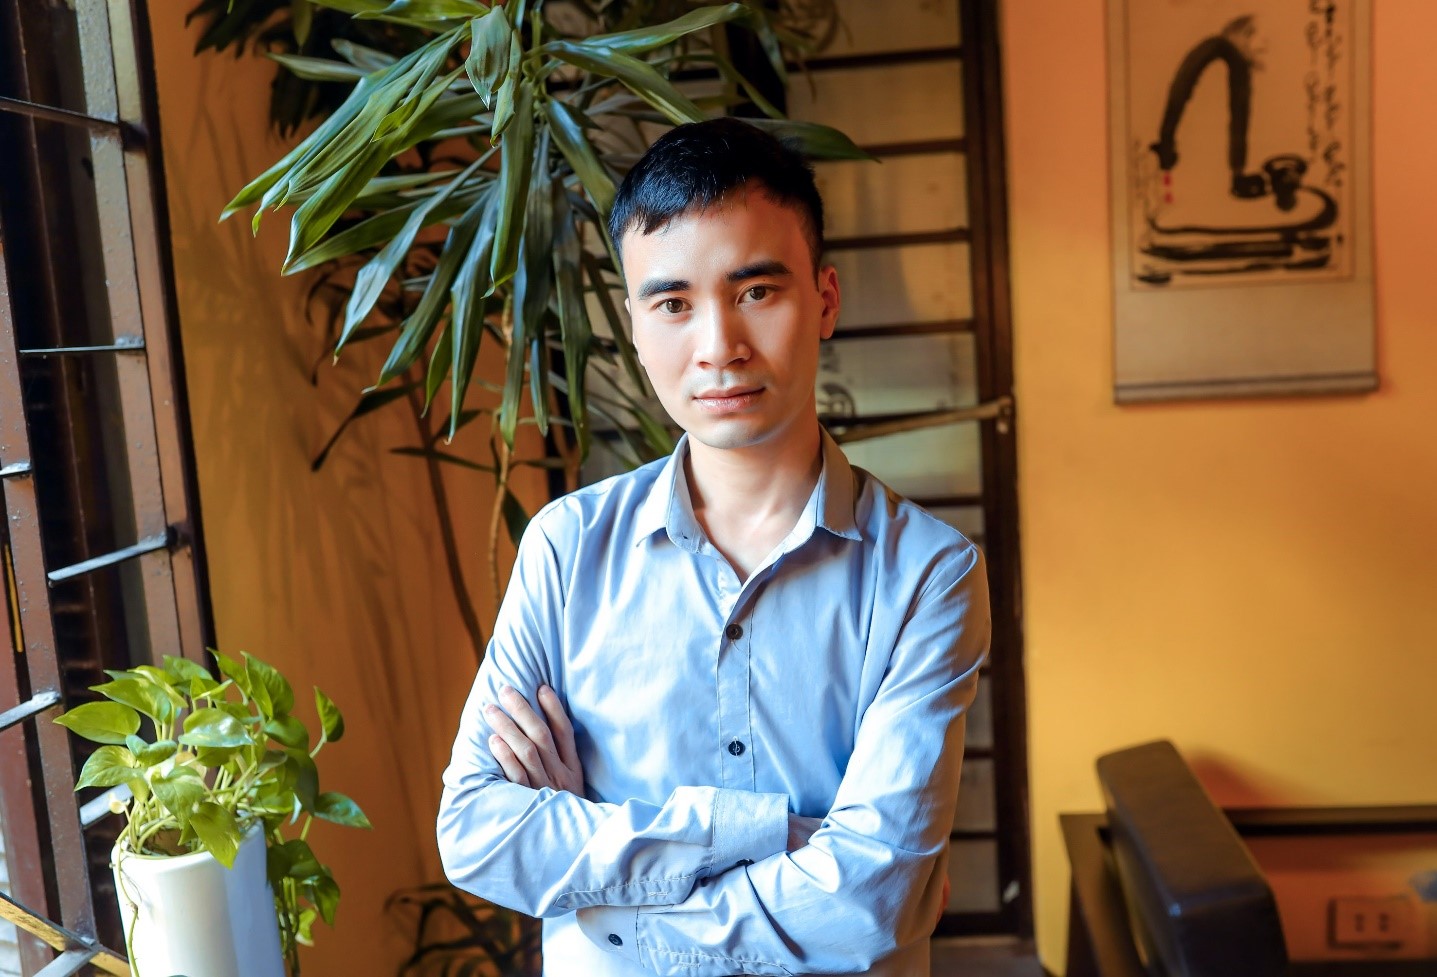  Nguyễn Văn Hoàng – Blogger trẻ tuổi nhắc mọi người uống nước mỗi ngày  